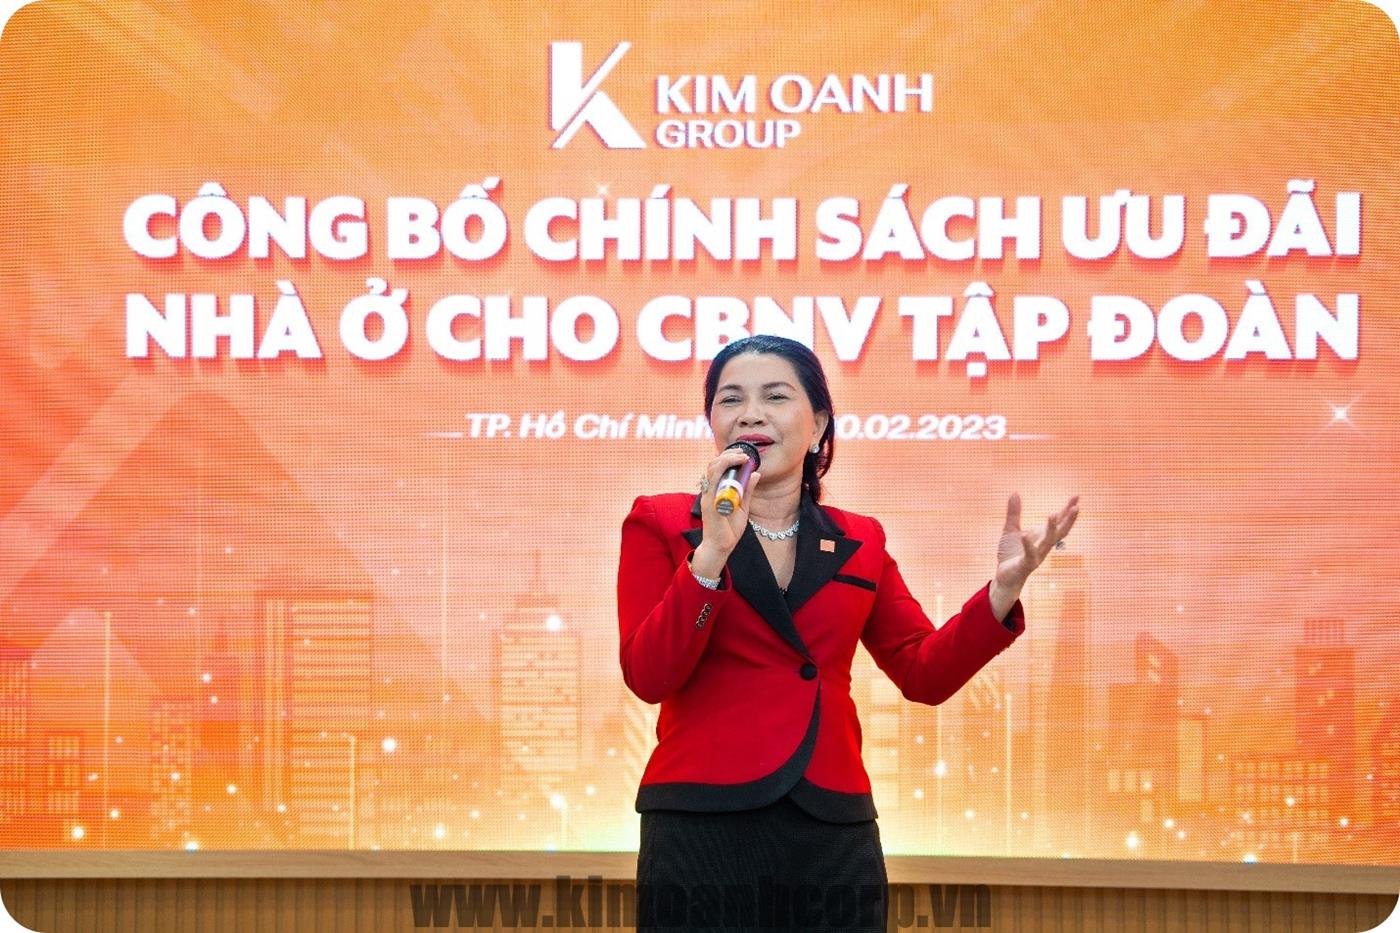 Bà Đặng Thị Kim Oanh – Chủ tịch HĐQT kiêm Tổng Giám đốc Kim Oanh Group – công bố chính sách hỗ trợ nhà ở cho nhân viên Tập đoàn